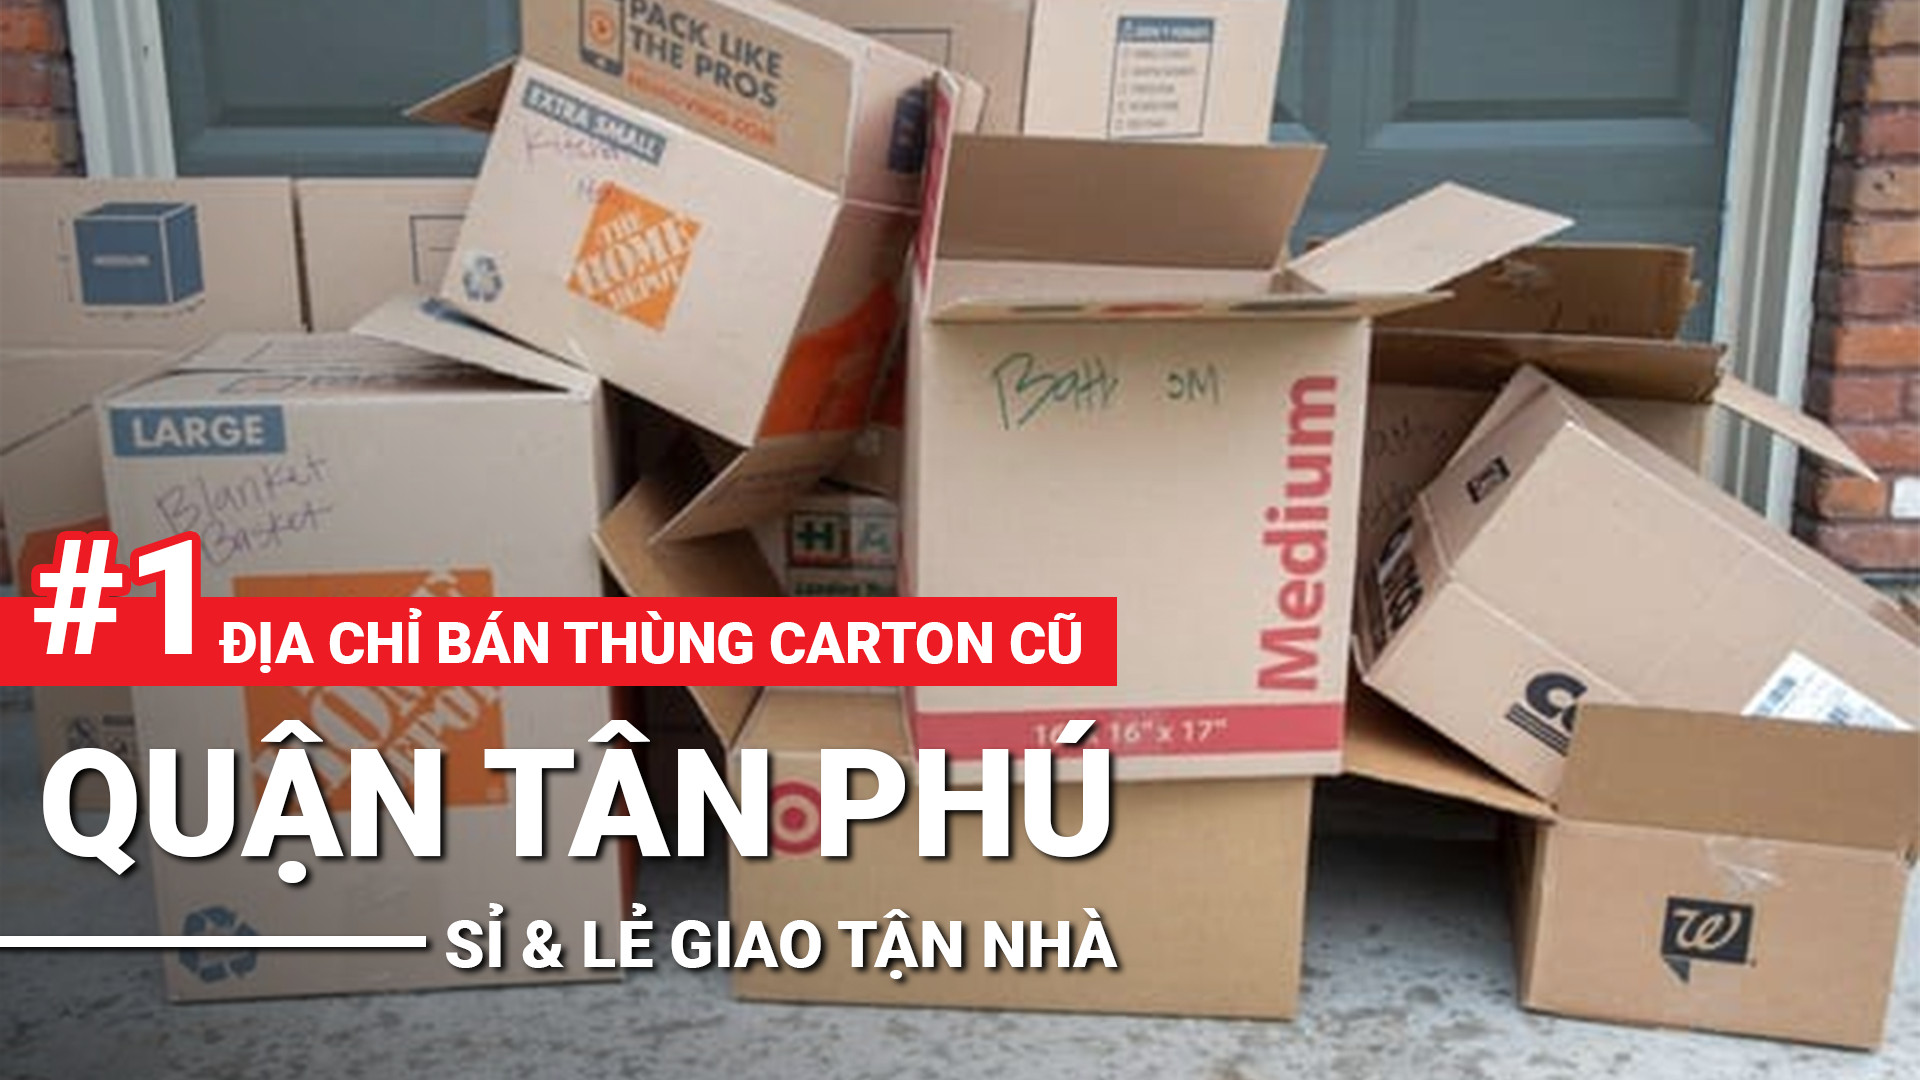 Bán thùng carton cũ quận Tân Phú